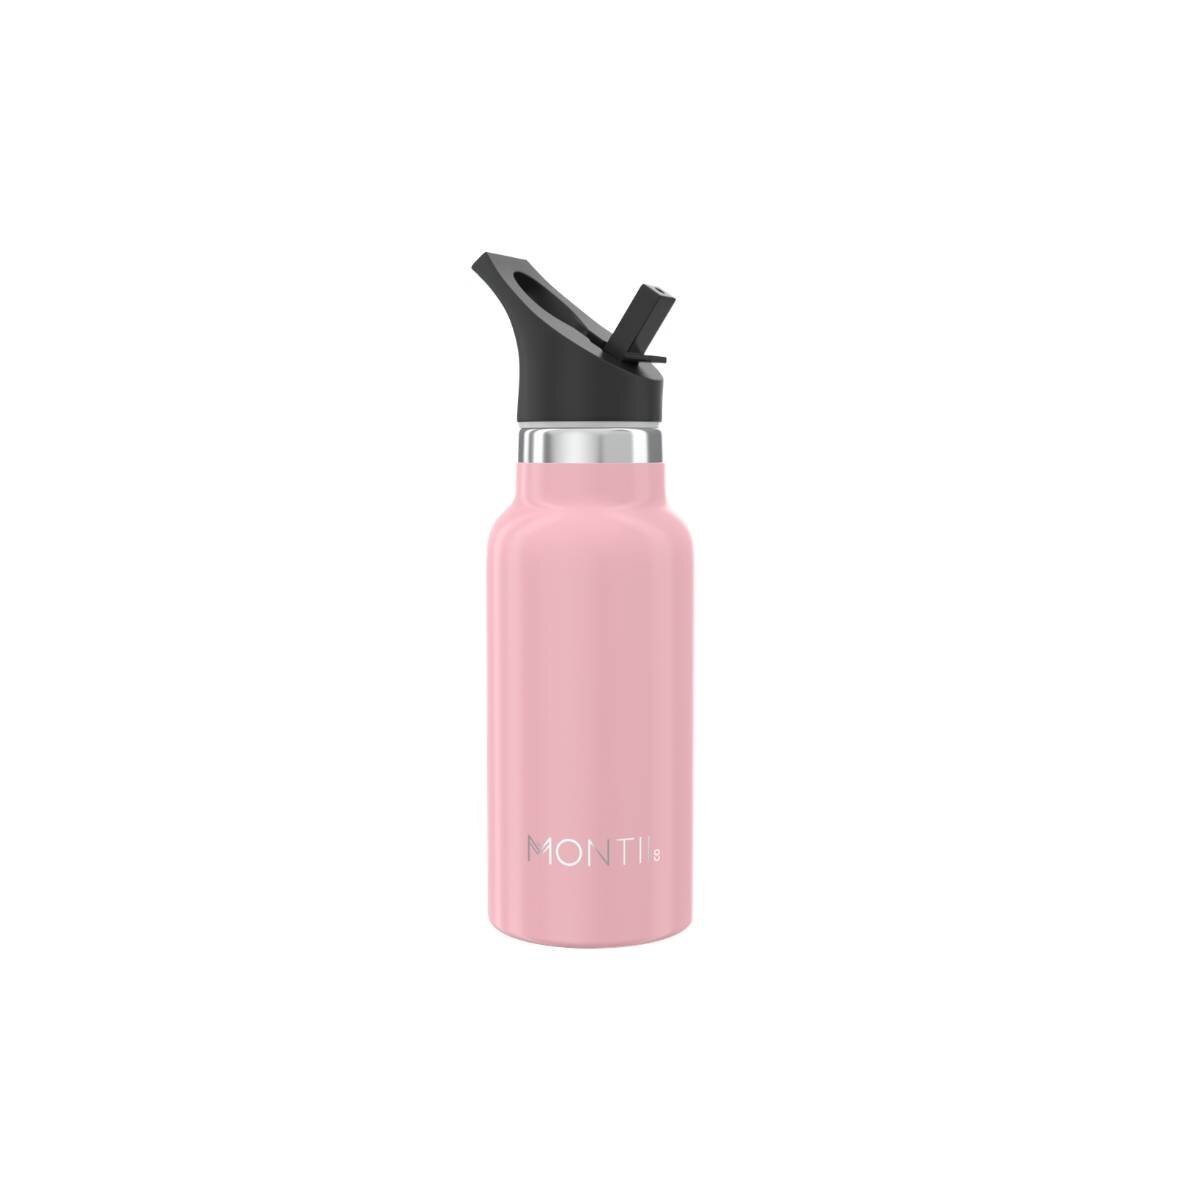 Montii Mini Bottle - Dusty Pink